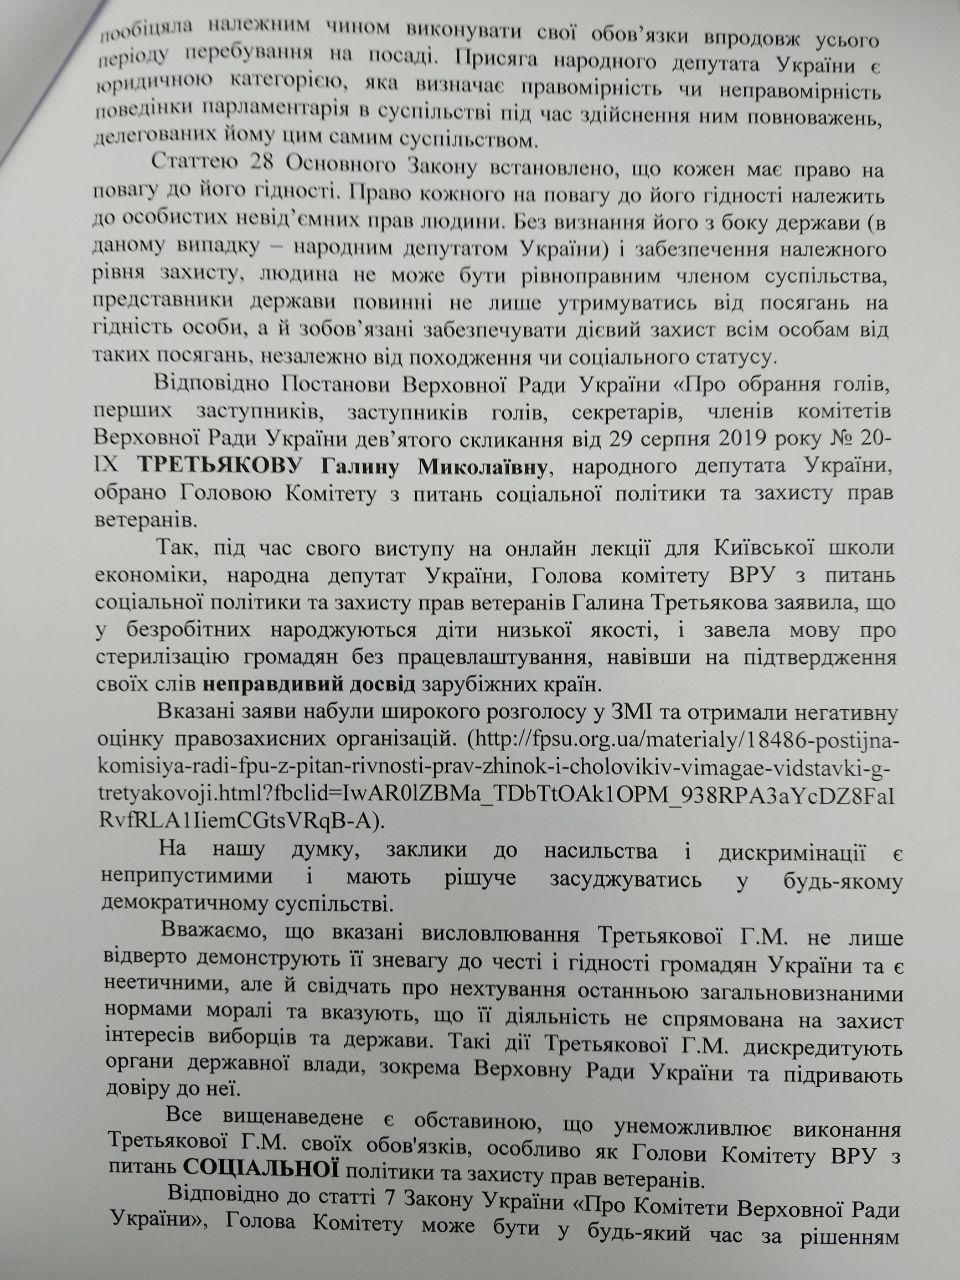 Звернення депутатів до Дмитра Разумкова про зняття з посади Галини Третьякової